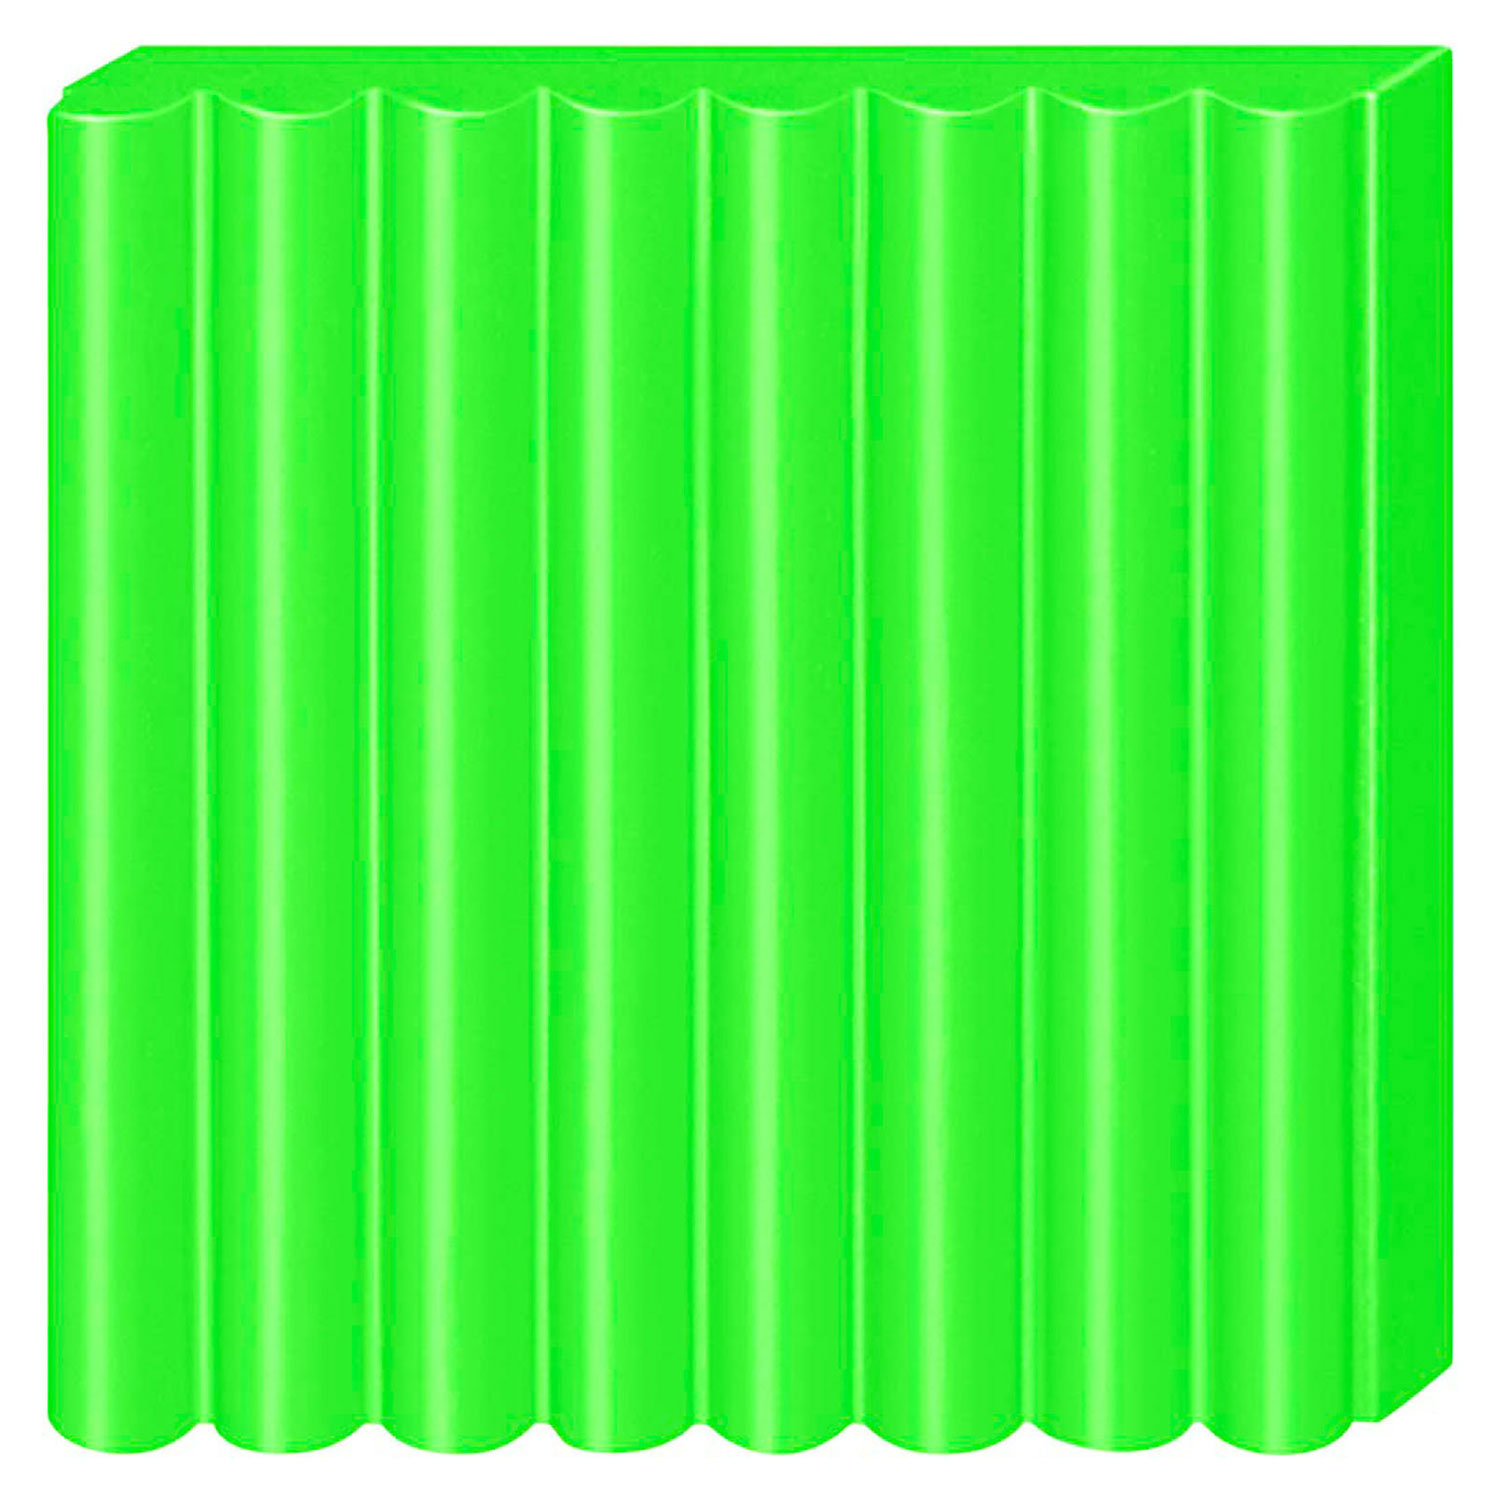 FIMO Effect Boetseerklei Neon Groen, 57gr